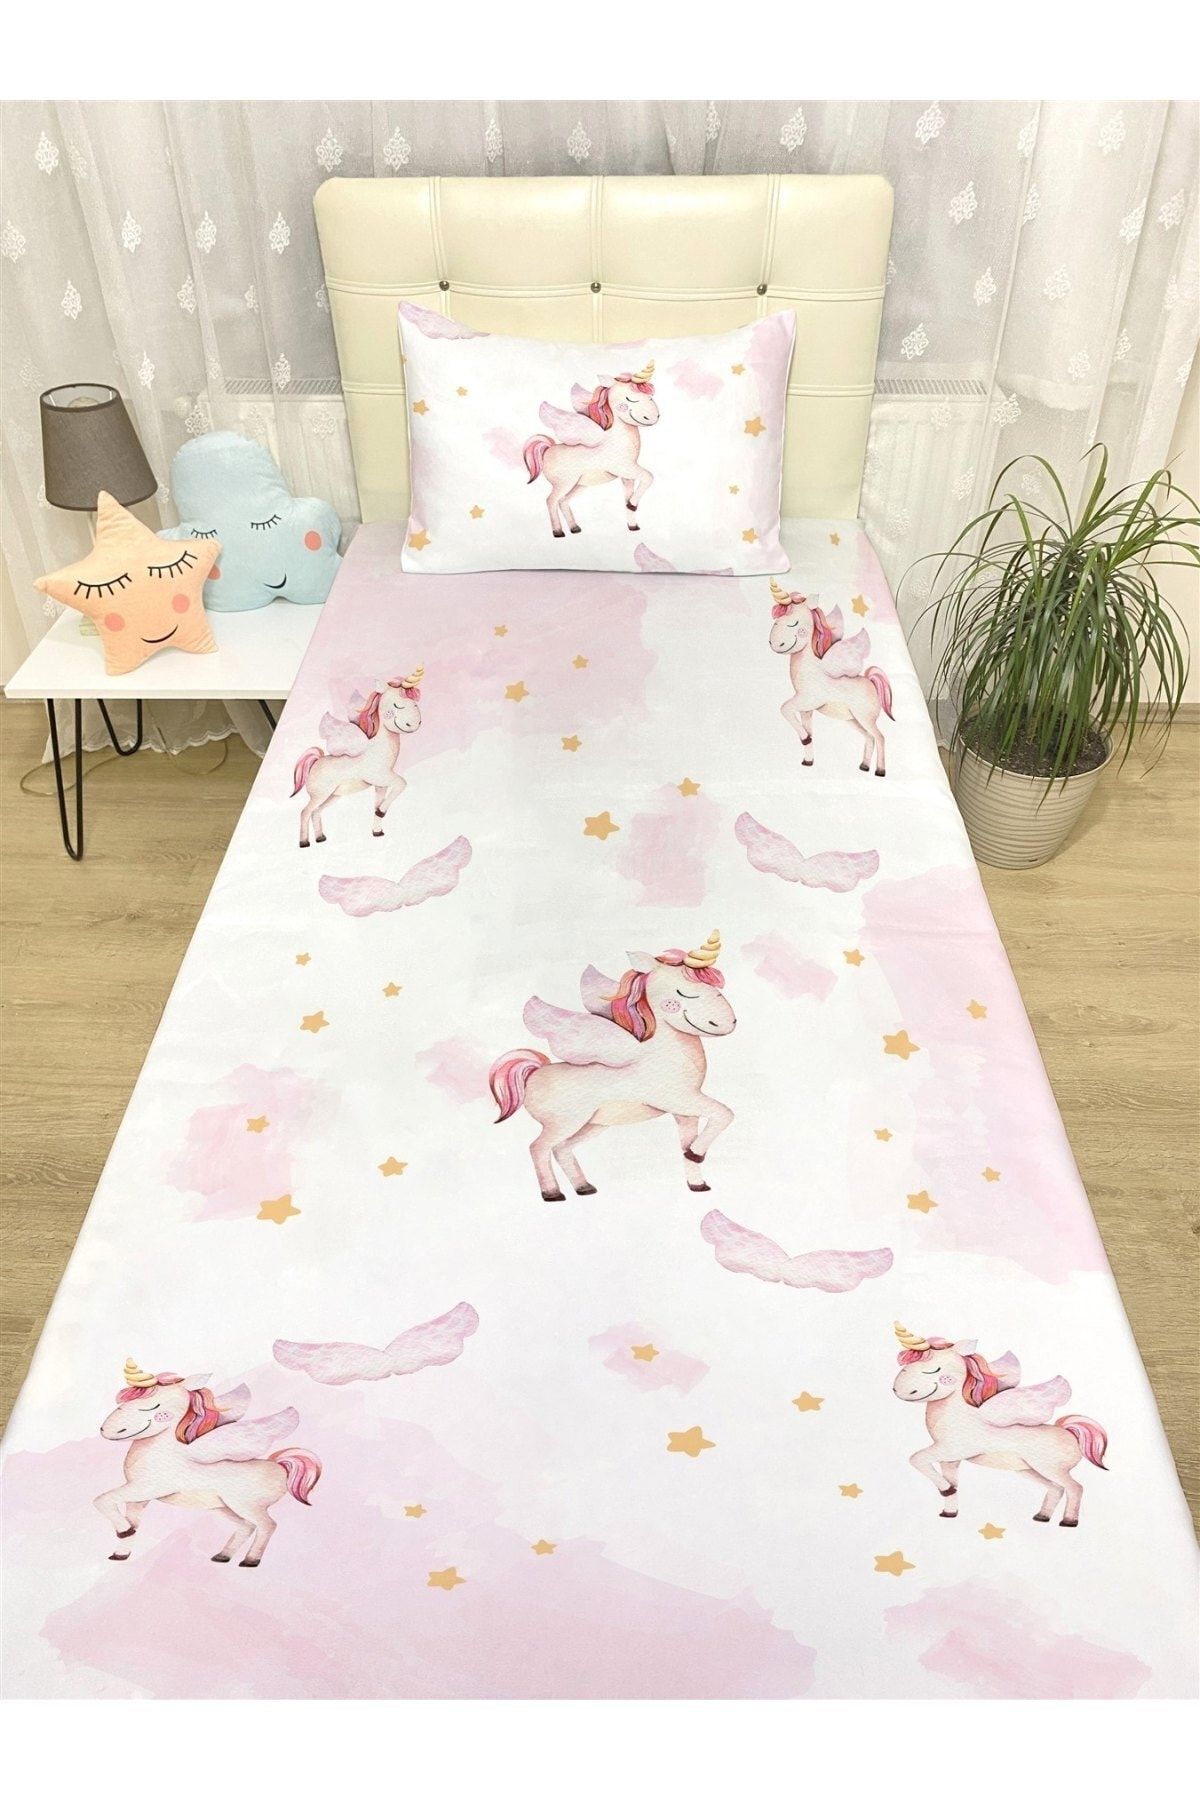 Evpanya Pembe Unicorn Desenli Yatak Örtüsü Ve Yastık Kılıfı